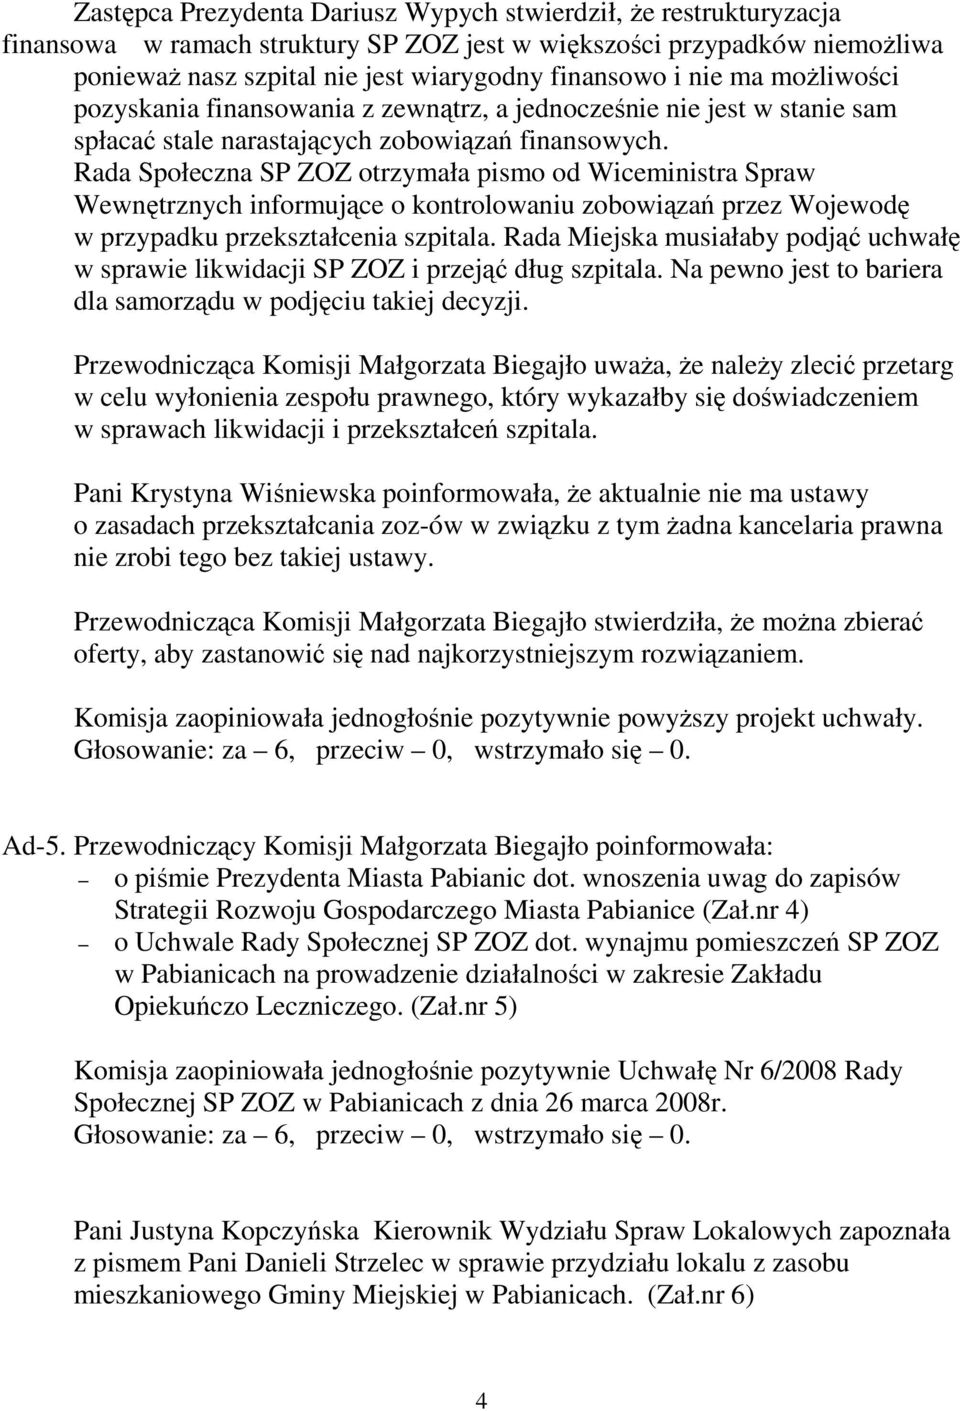 Rada Społeczna SP ZOZ otrzymała pismo od Wiceministra Spraw Wewnętrznych informujące o kontrolowaniu zobowiązań przez Wojewodę w przypadku przekształcenia szpitala.